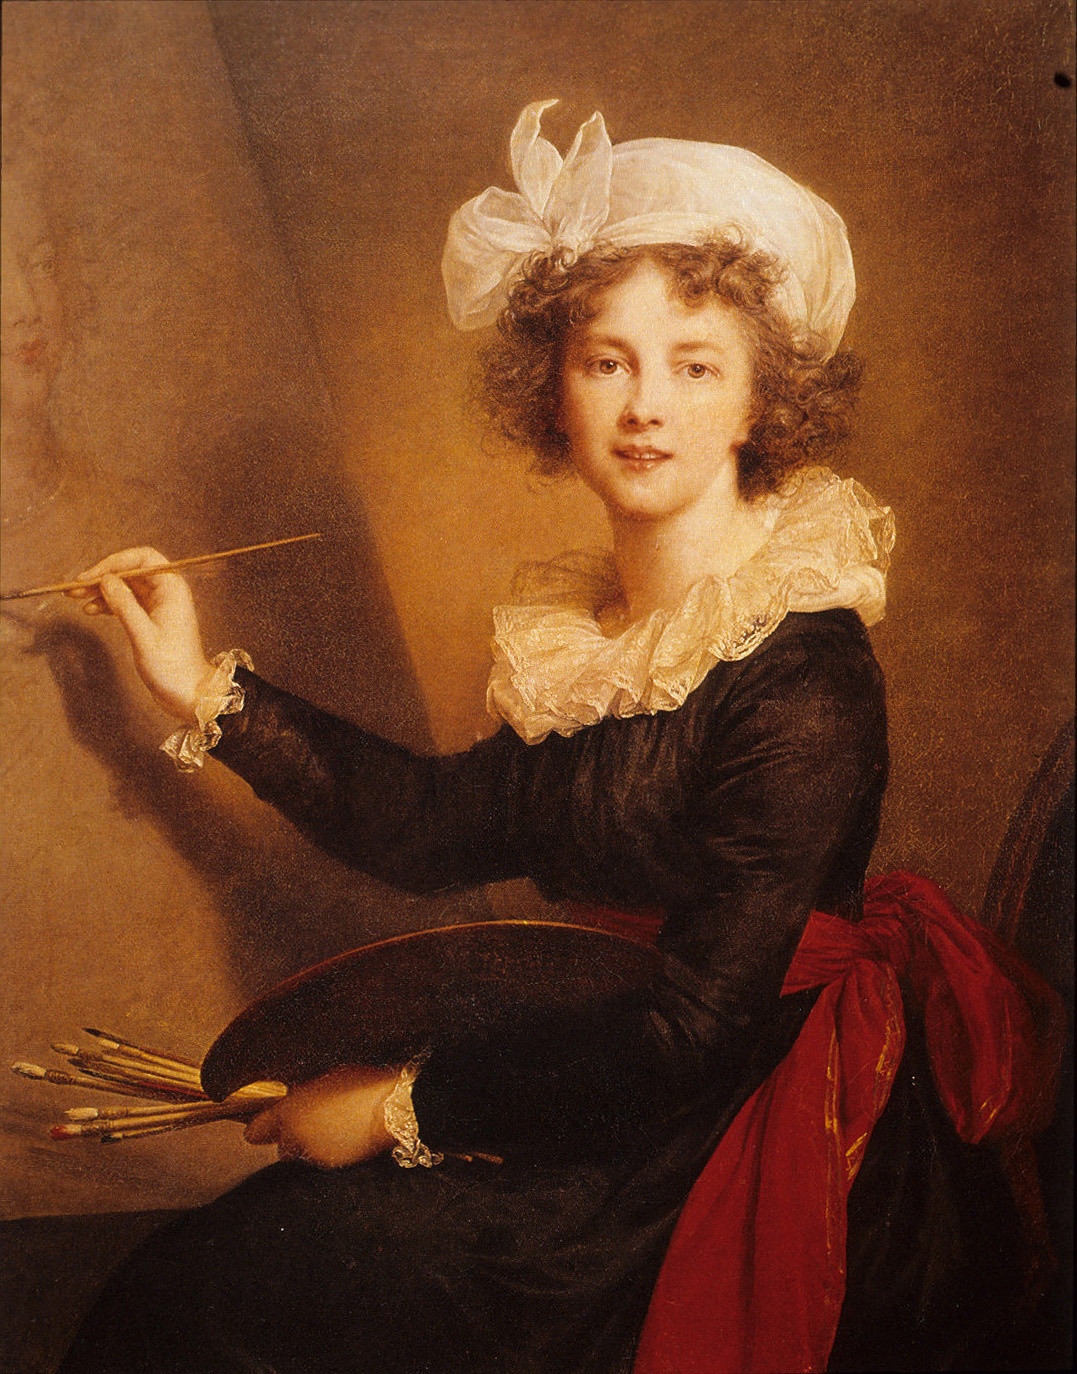 Élisabeth Vigée-Lebrun, „Selbstporträt“ / “Self-Portrait”, 1790